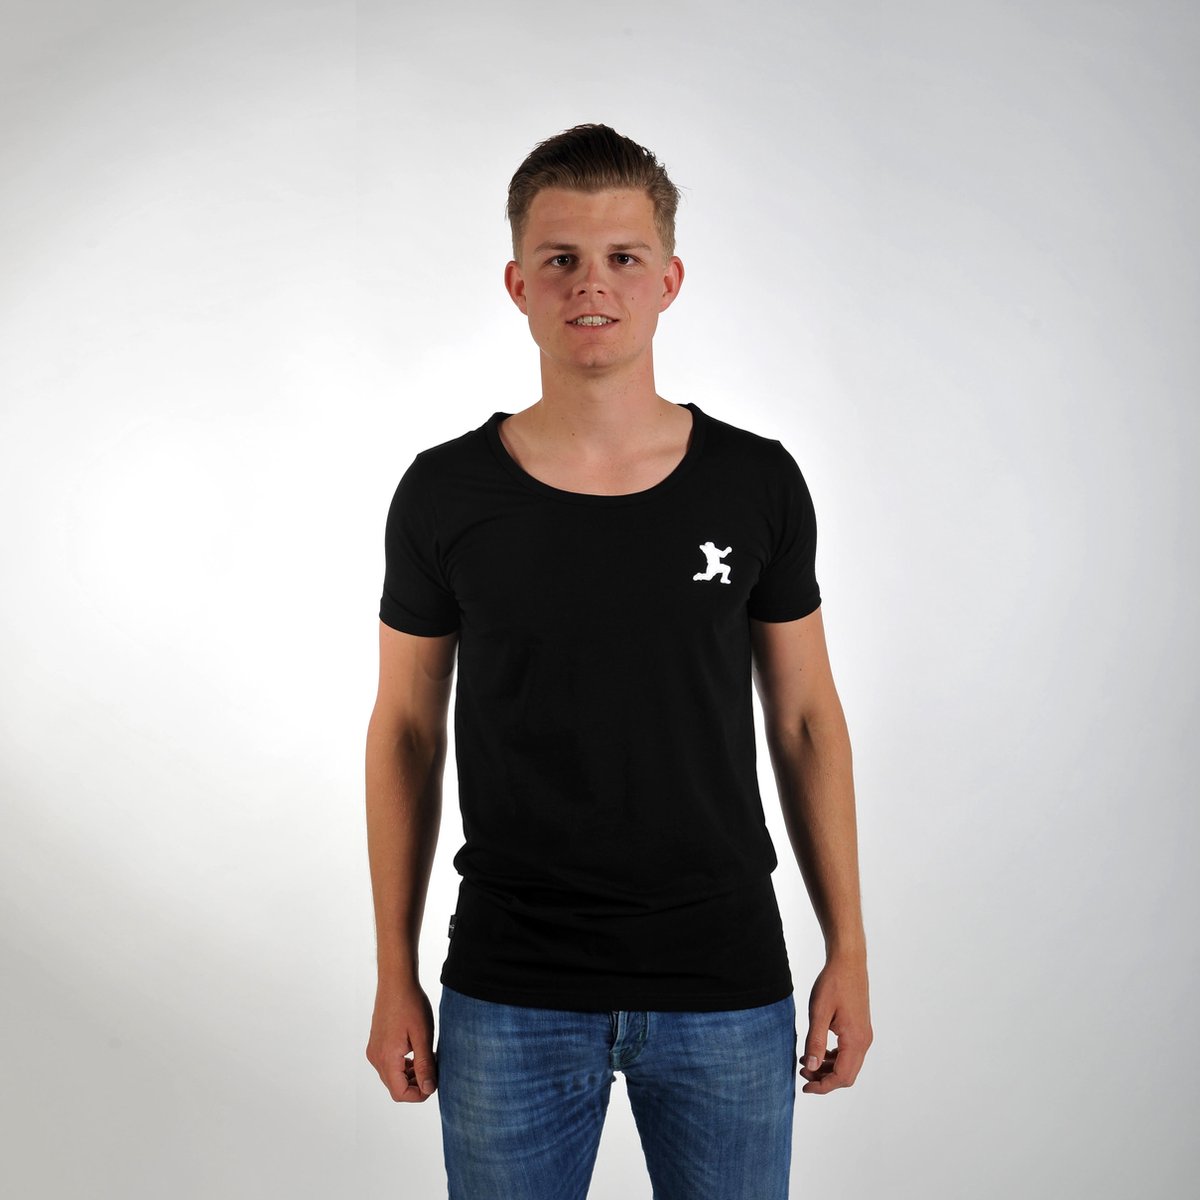 Imperatore - Andy van der Meijde t-shirt - zwart - wit logo - Maat XL